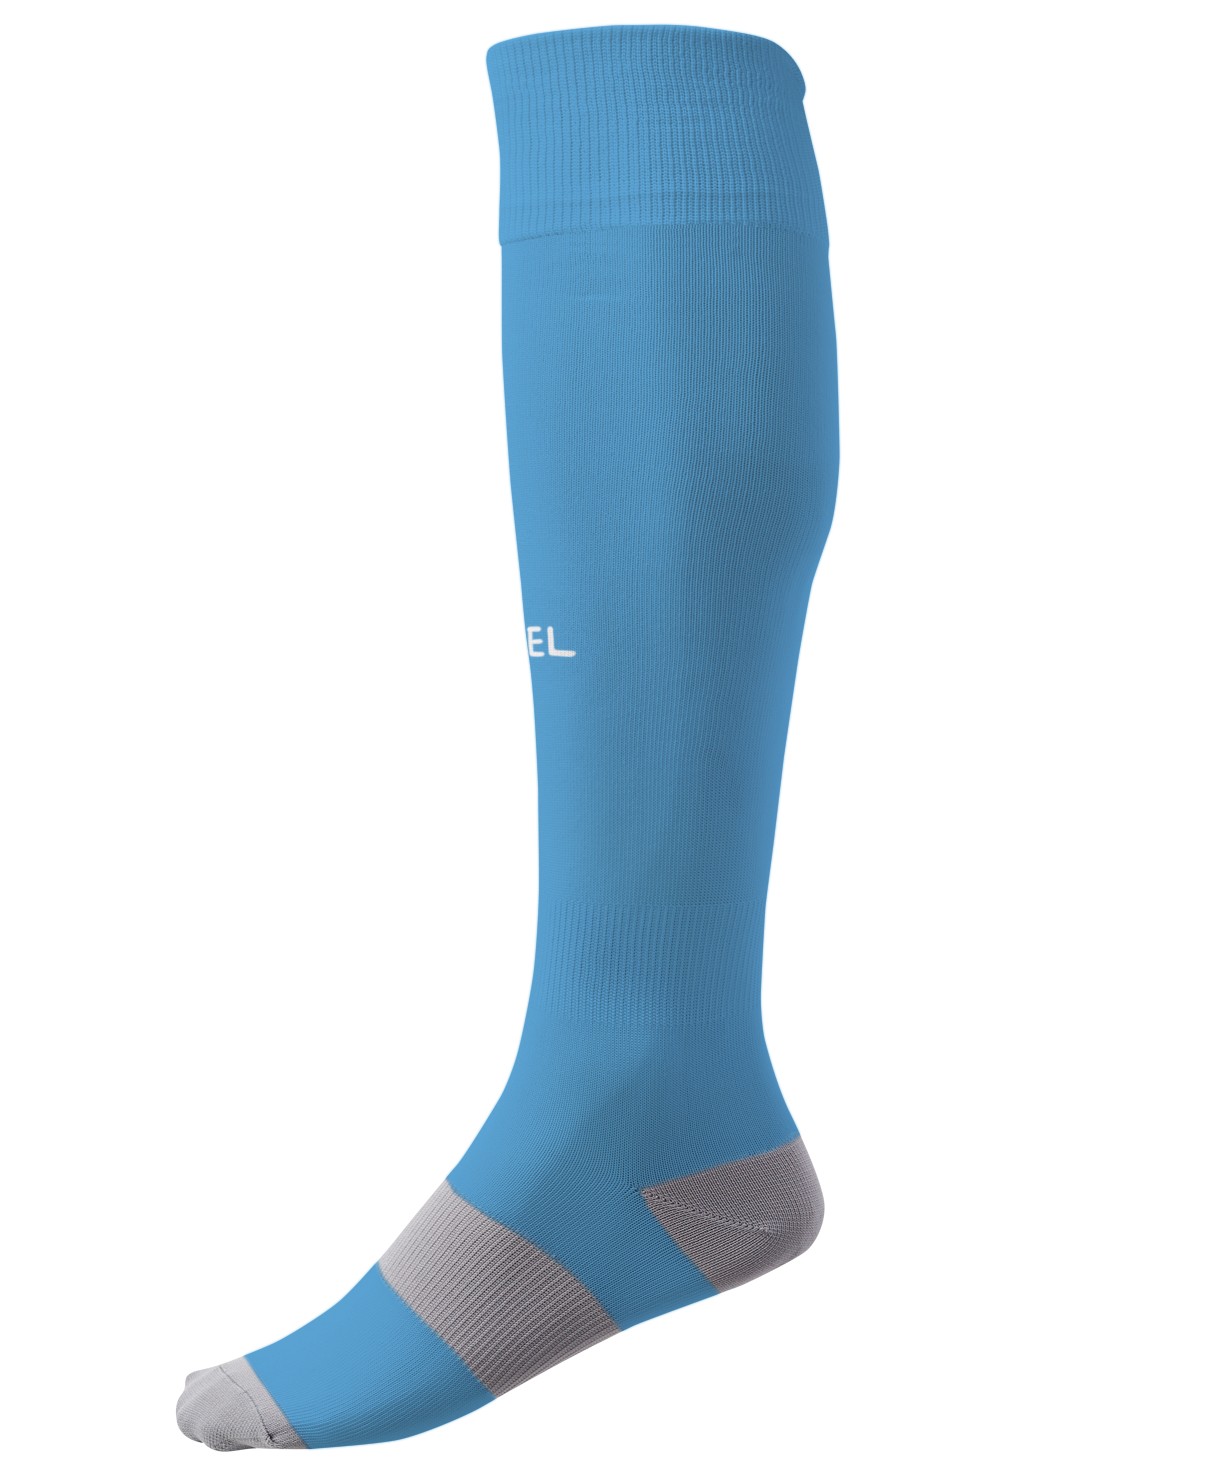 Гетры футбольные Jogel Camp basic socks, голубой/белый 1230_1479